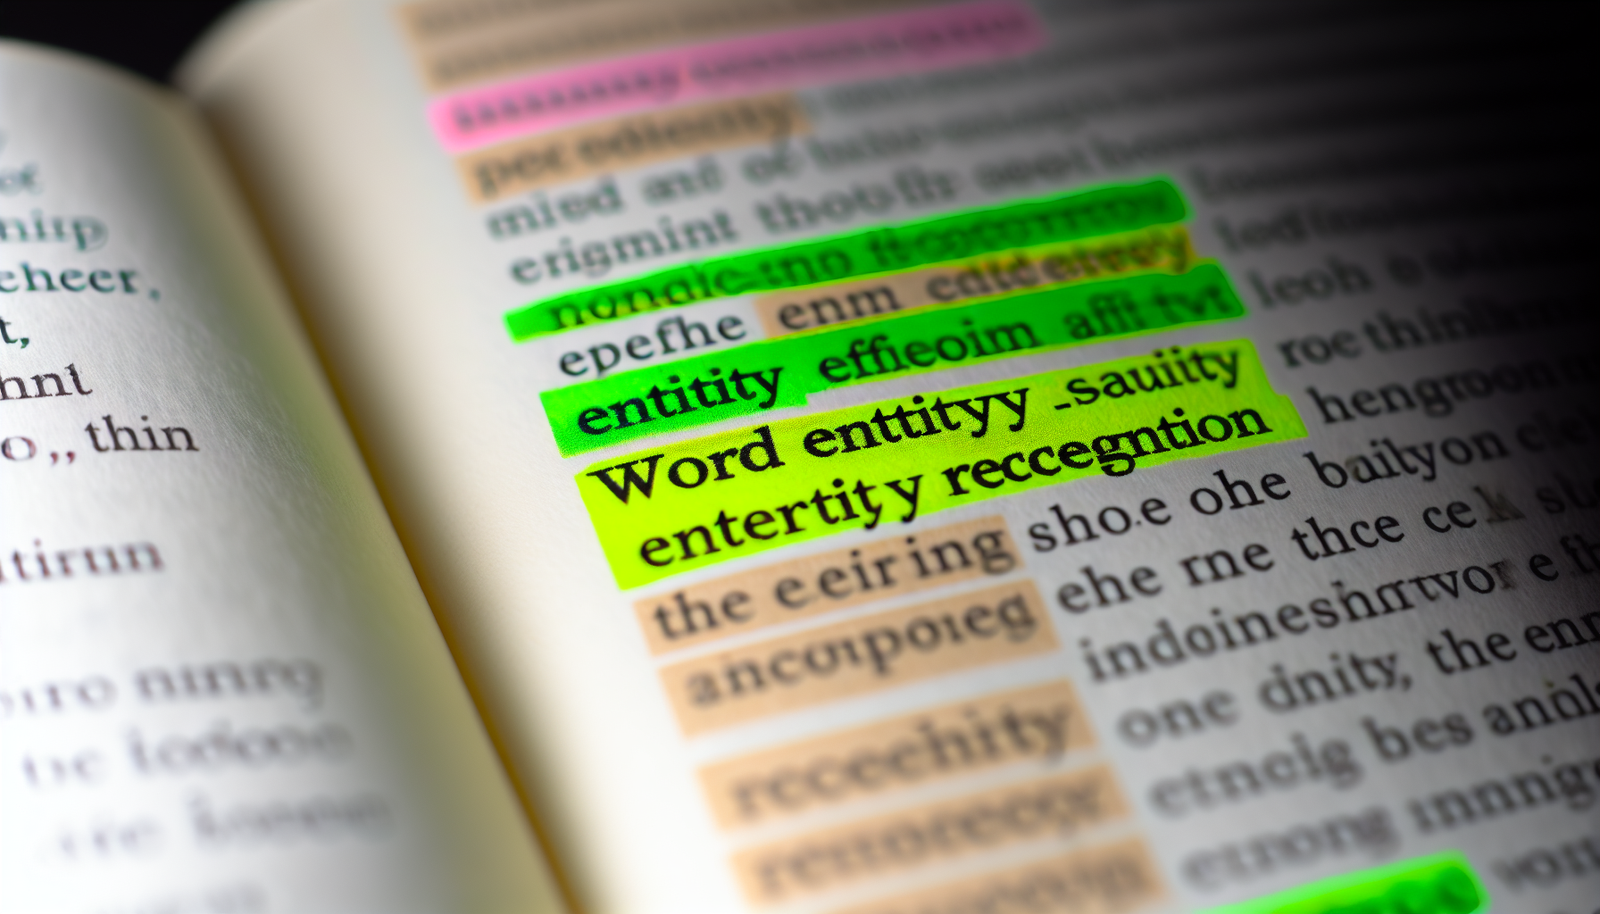 understanding entities word entity separate entity